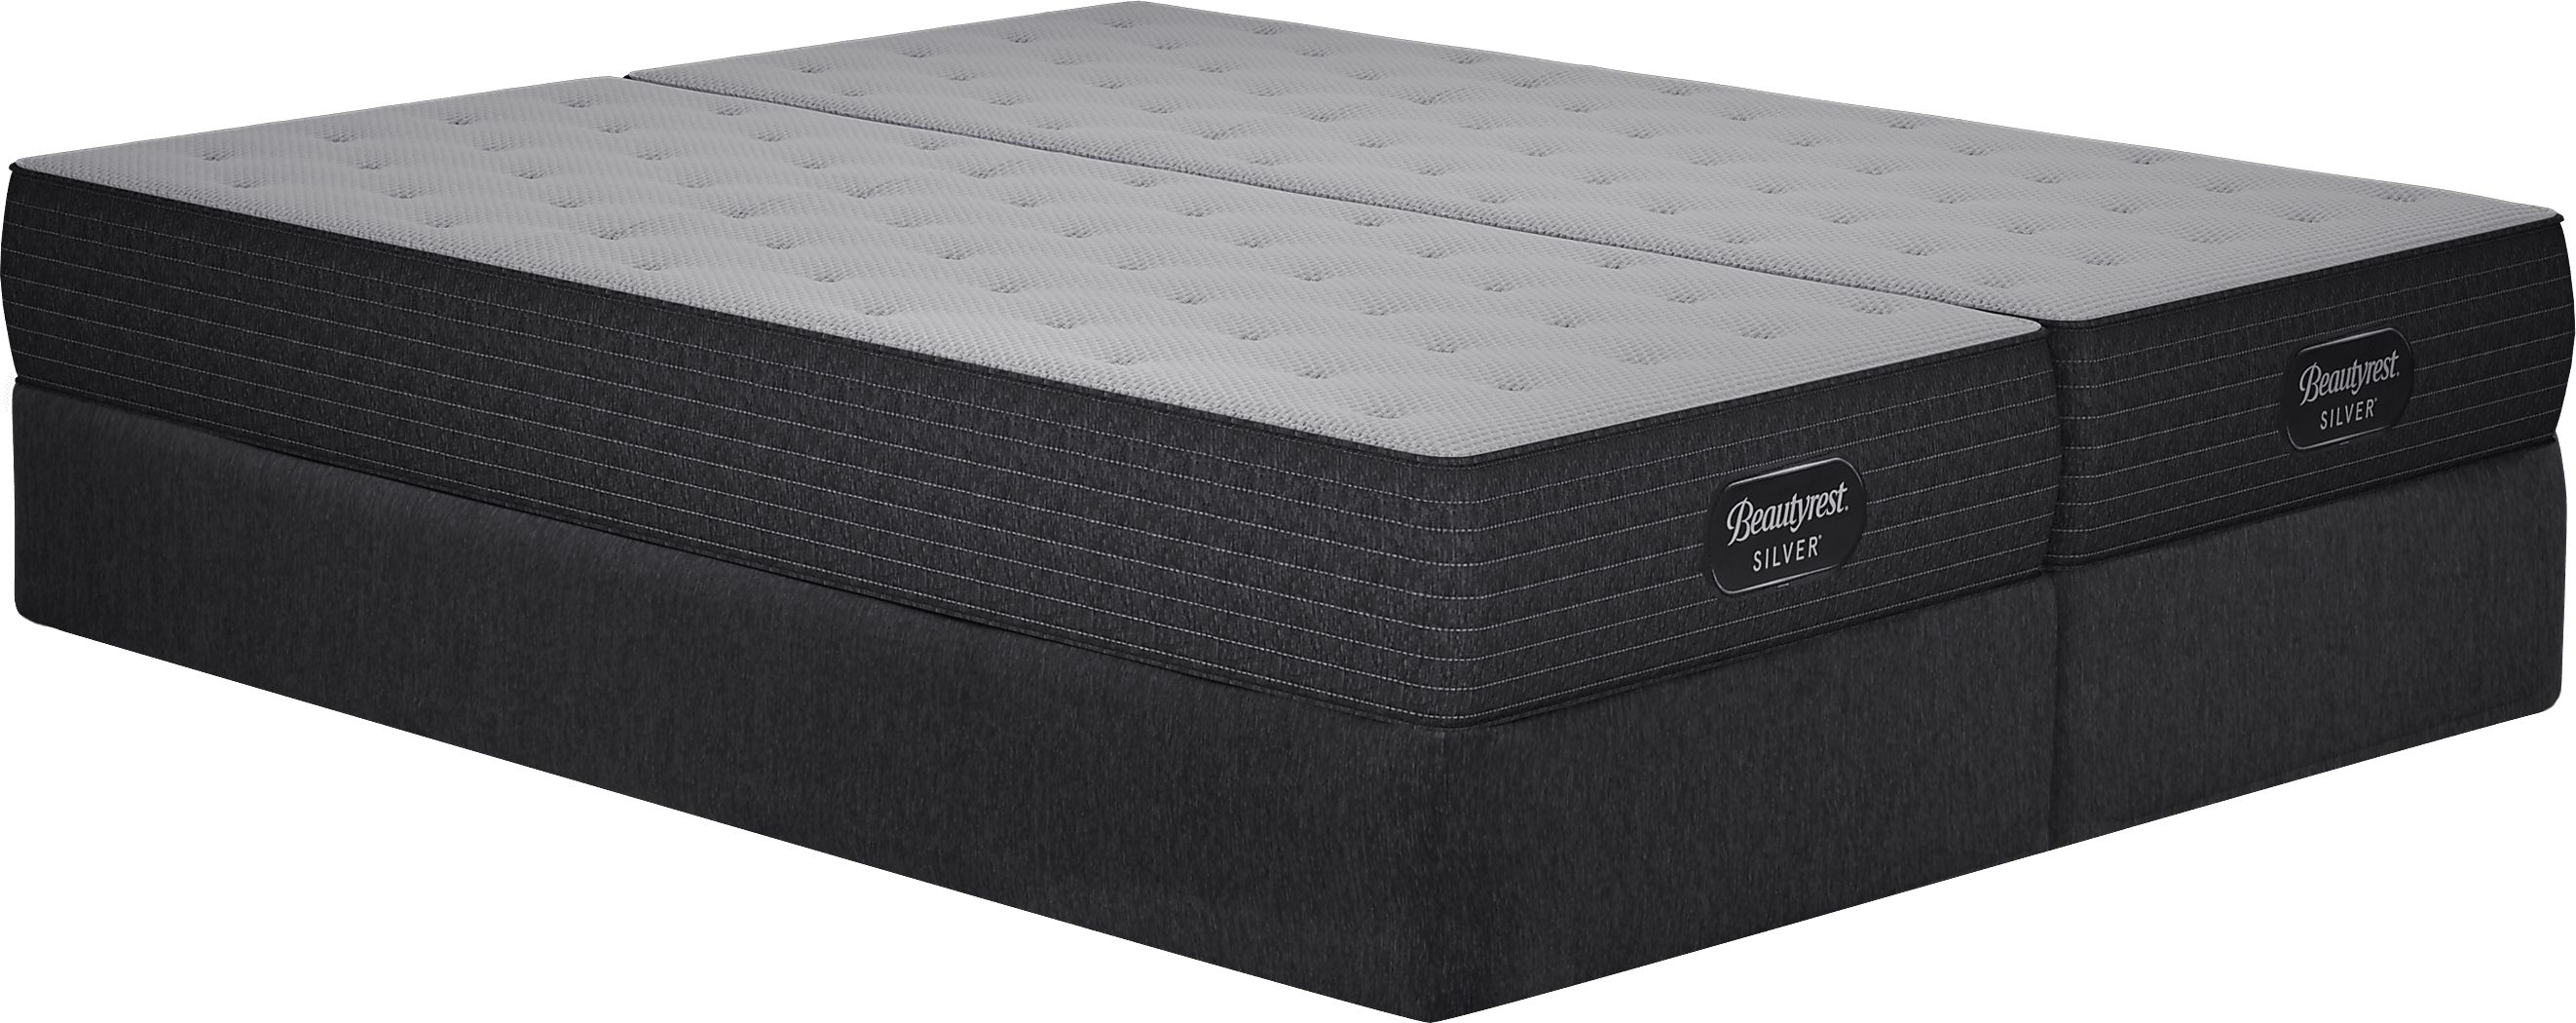 beautyrest clover lane mattress reviews